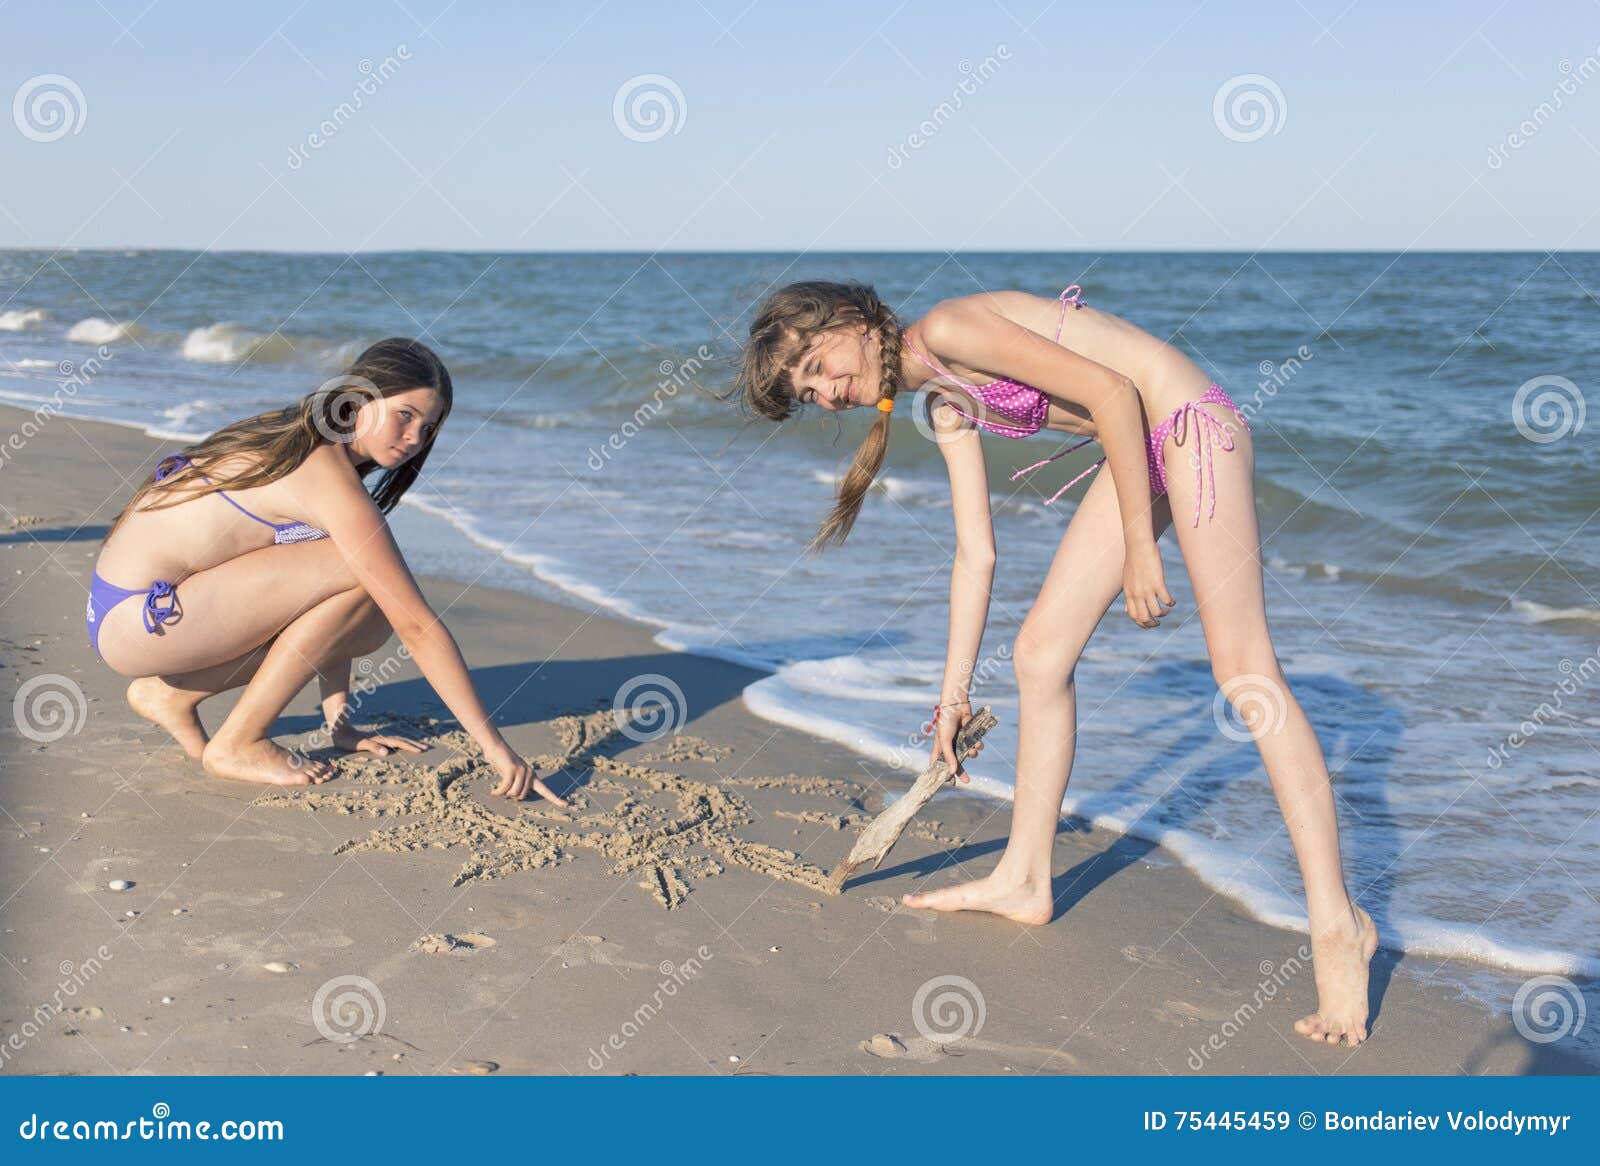 фото дети на голом пляже фото 93